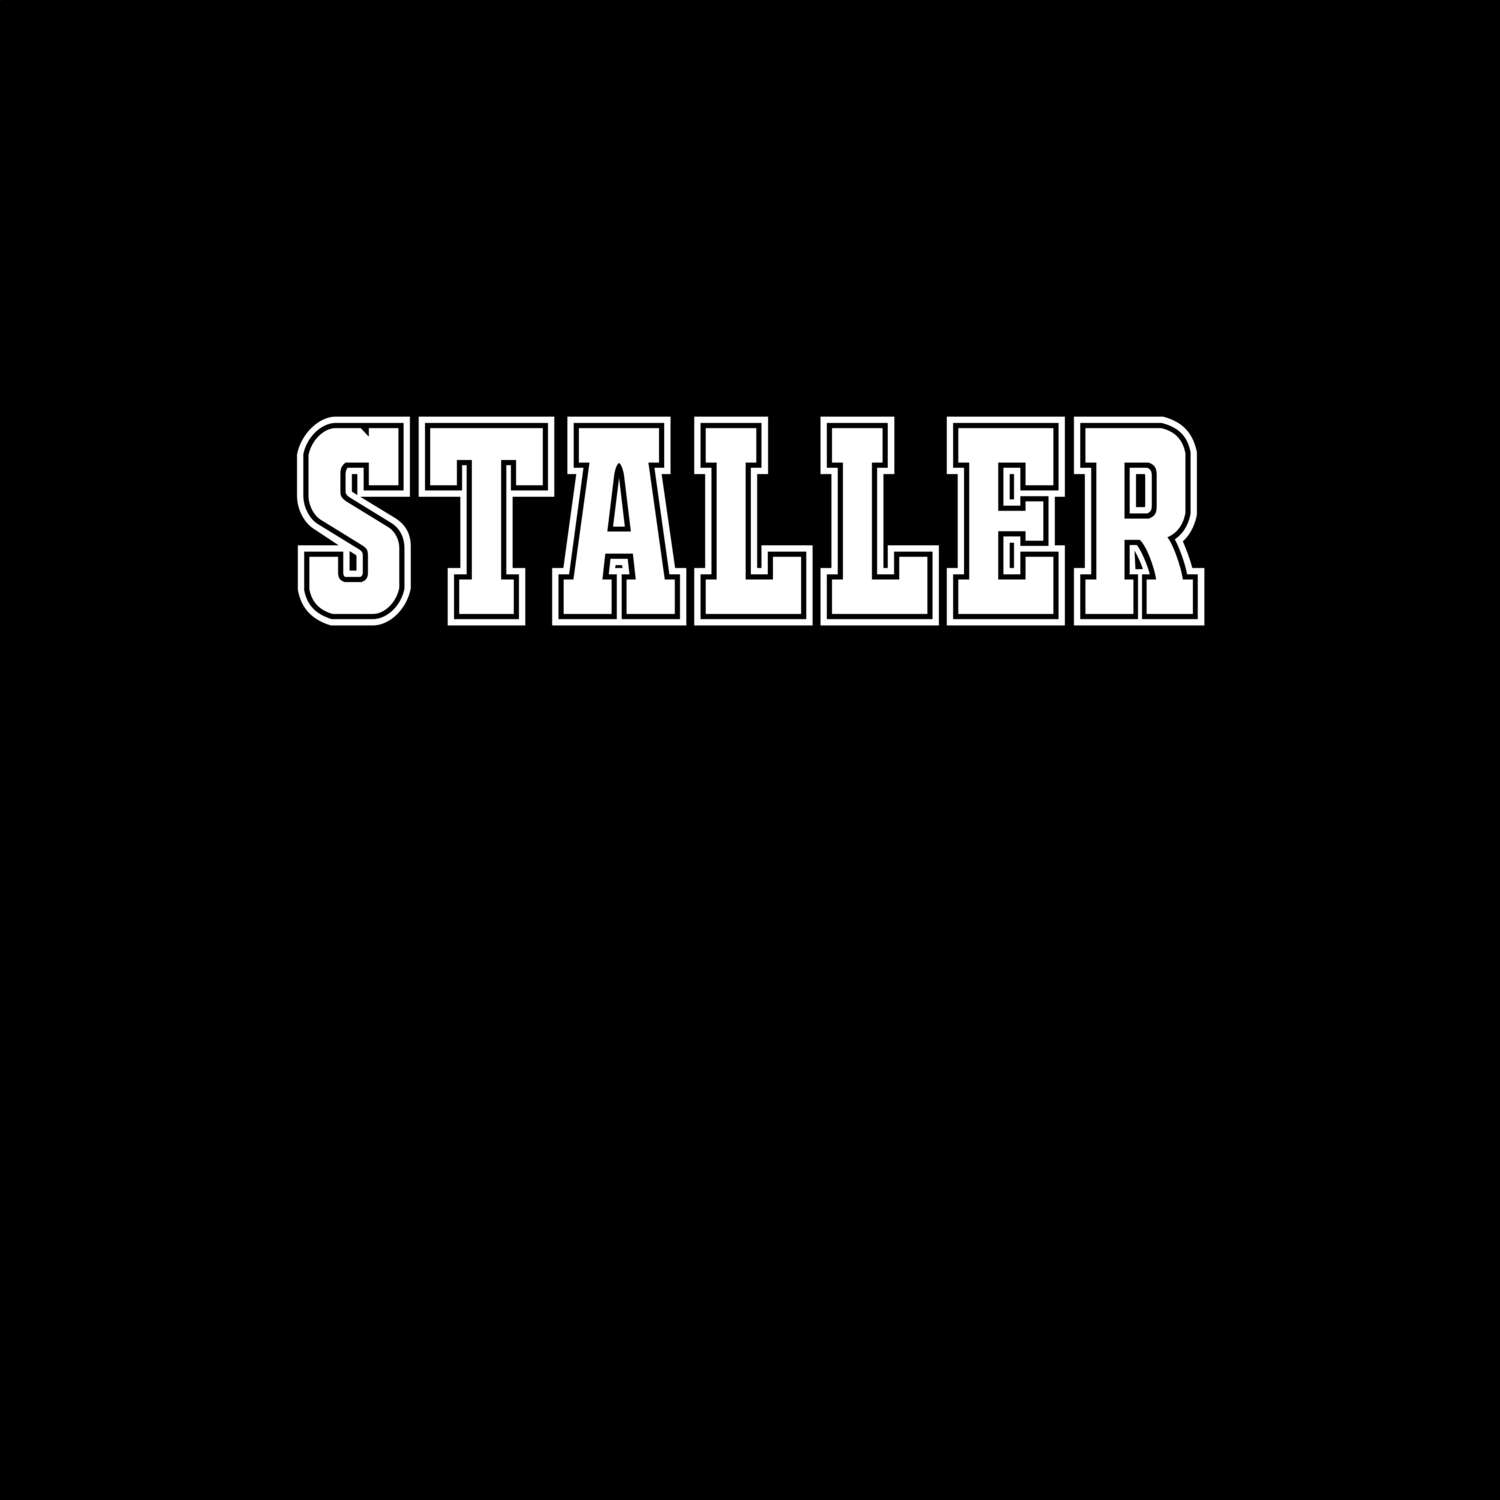 Staller T-Shirt »Classic«